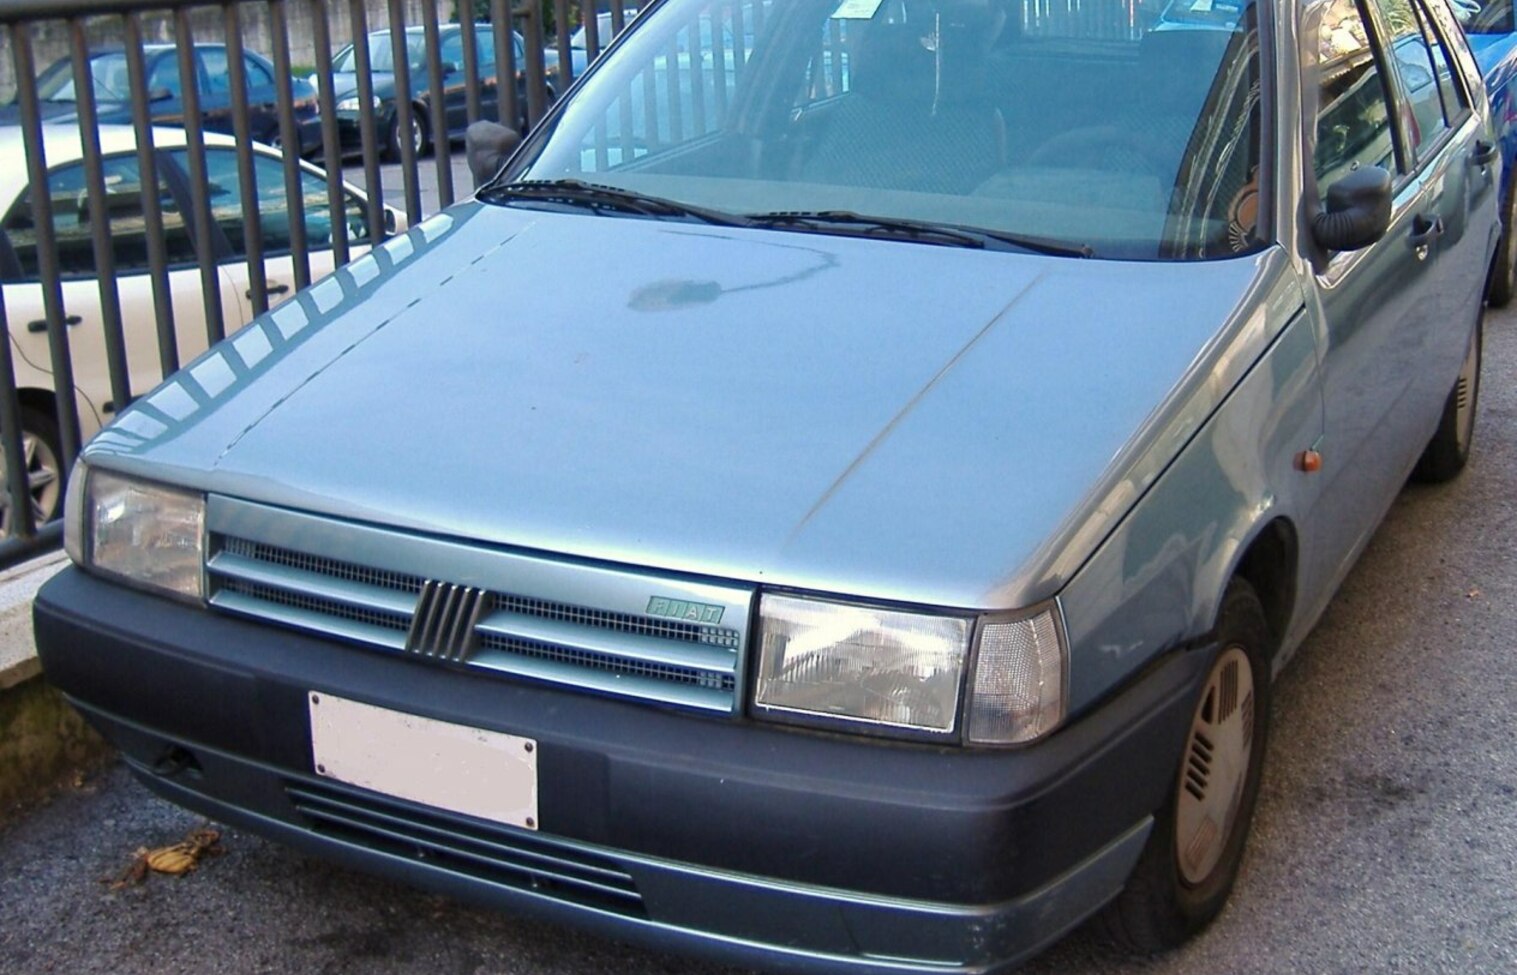 FIAT ///// TIPO - Fiat Tipo 2.0 i.e. (1990-1991)